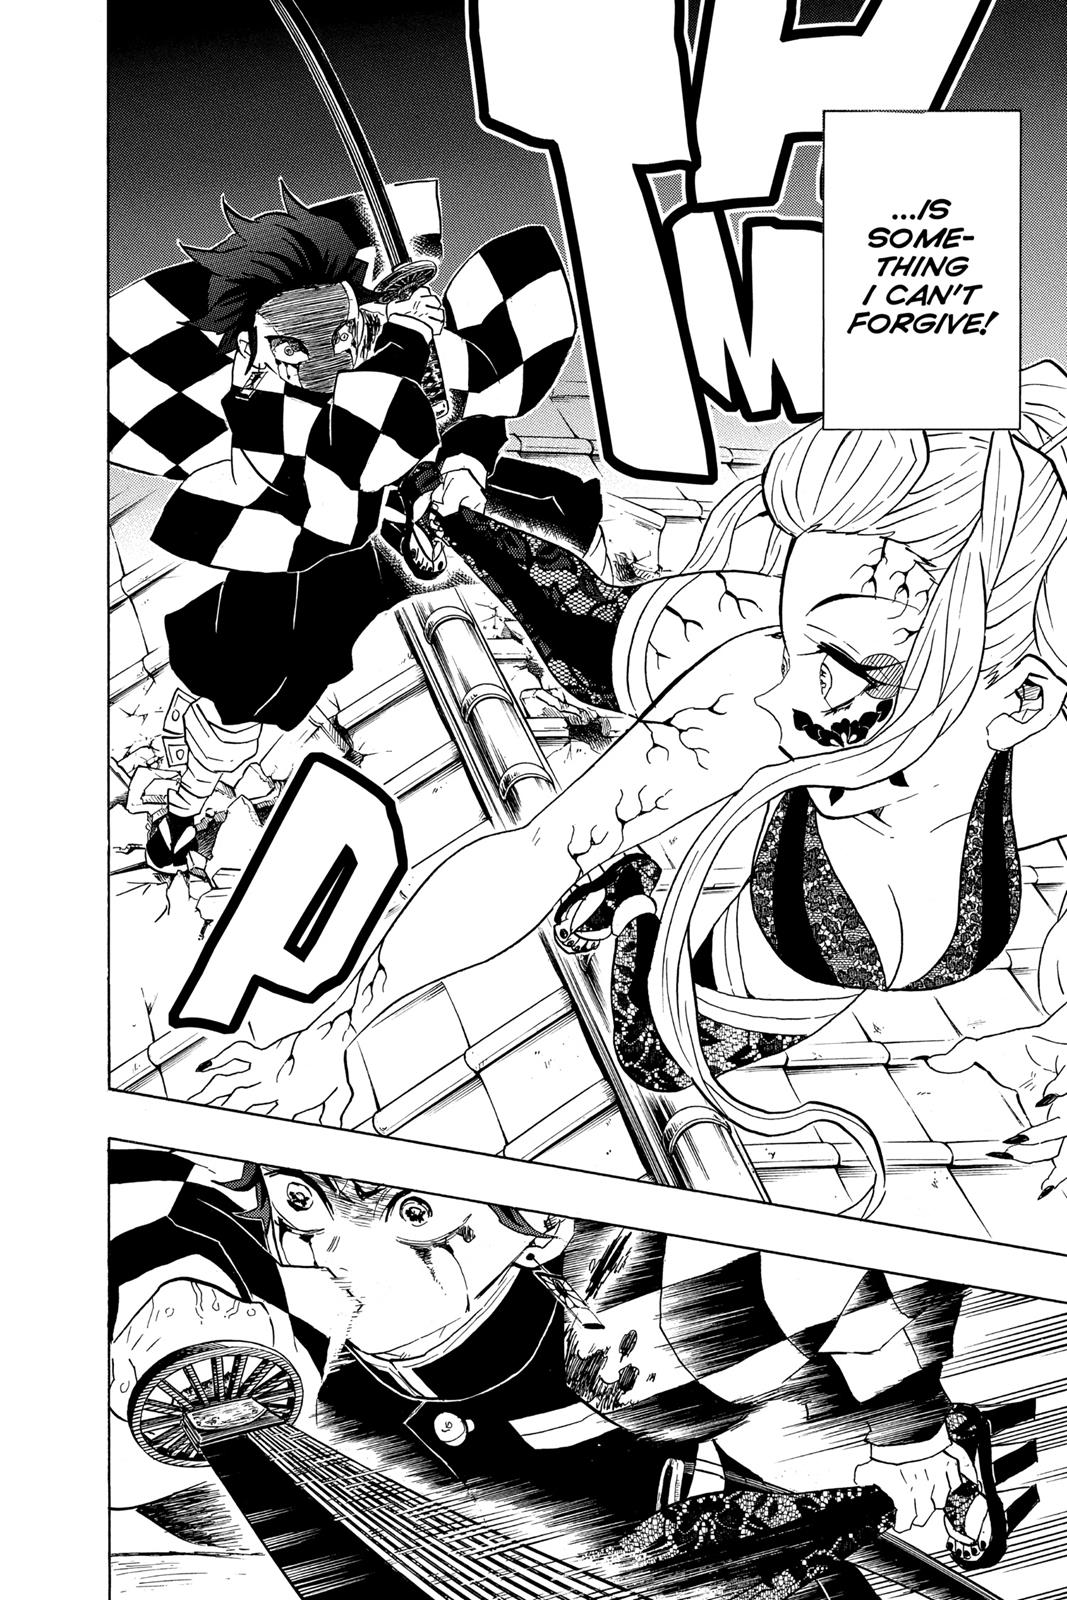 Demon Slayer Manga Manga Chapter - 81 - image 6